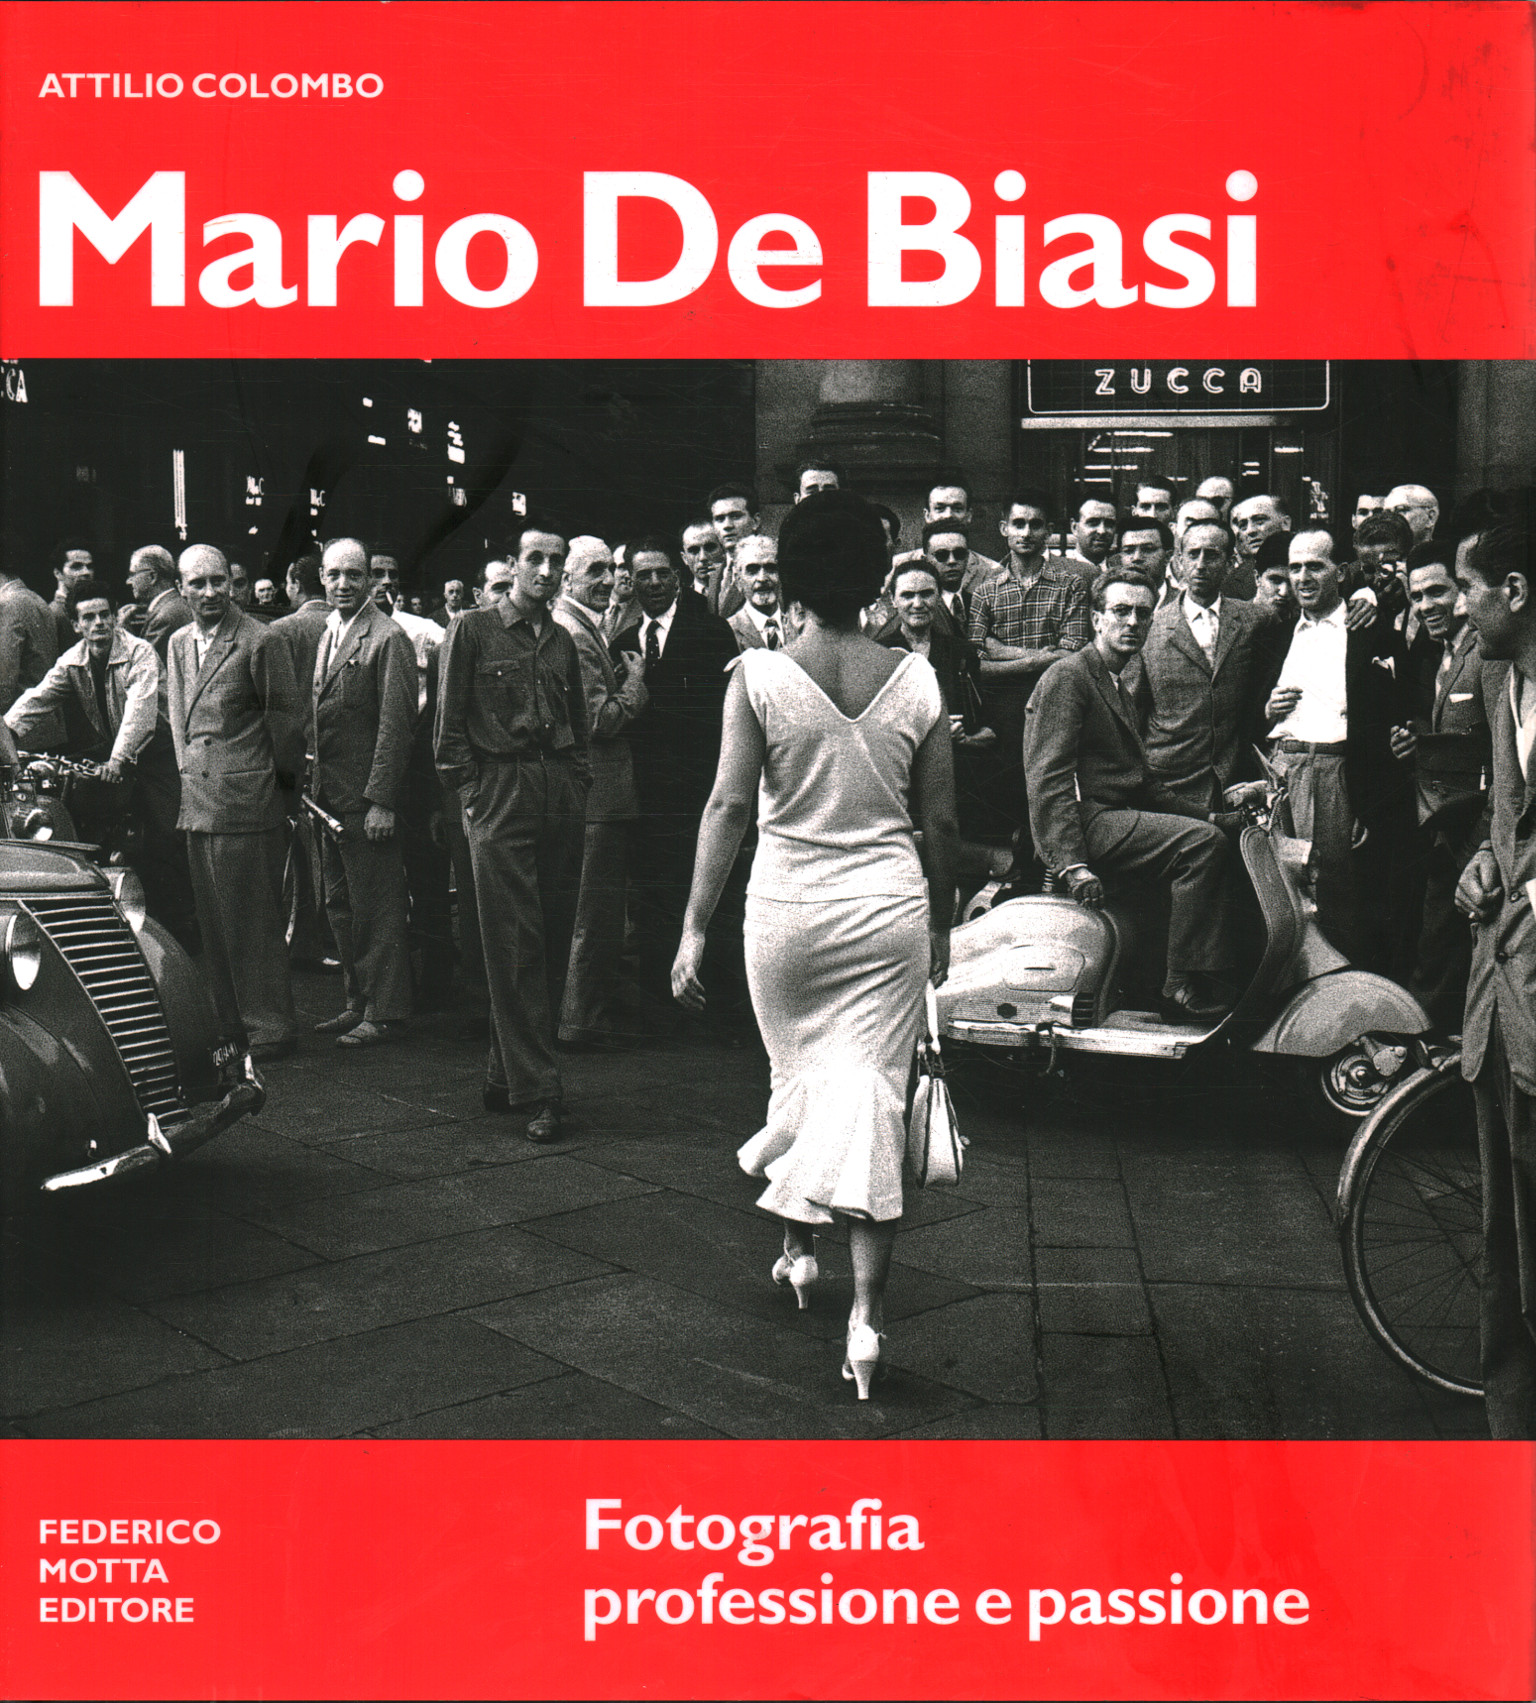 Mario De Biasi. profesión de fotografía y